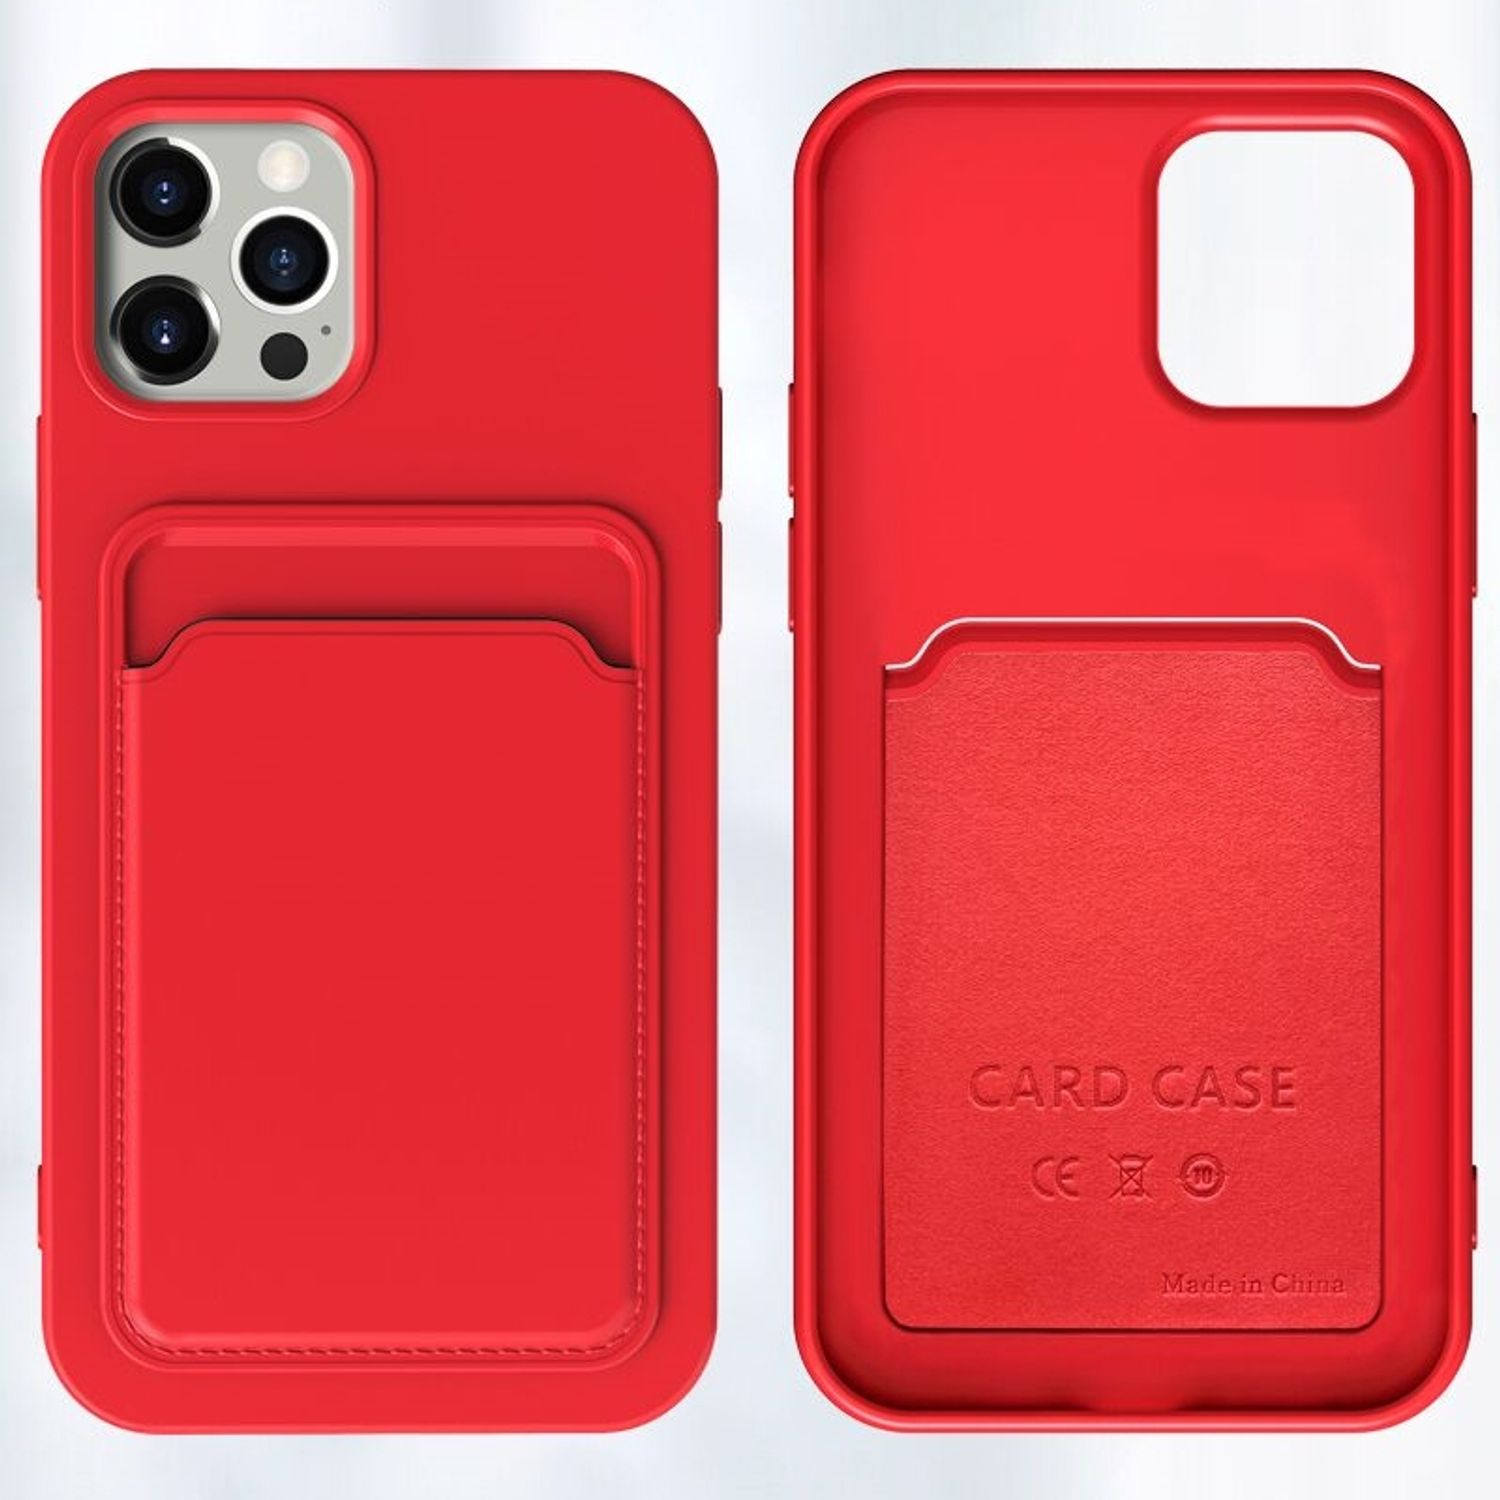 Case, DESIGN Orange Rosa iPhone 12 Pro, Apple, Backcover, KÖNIG